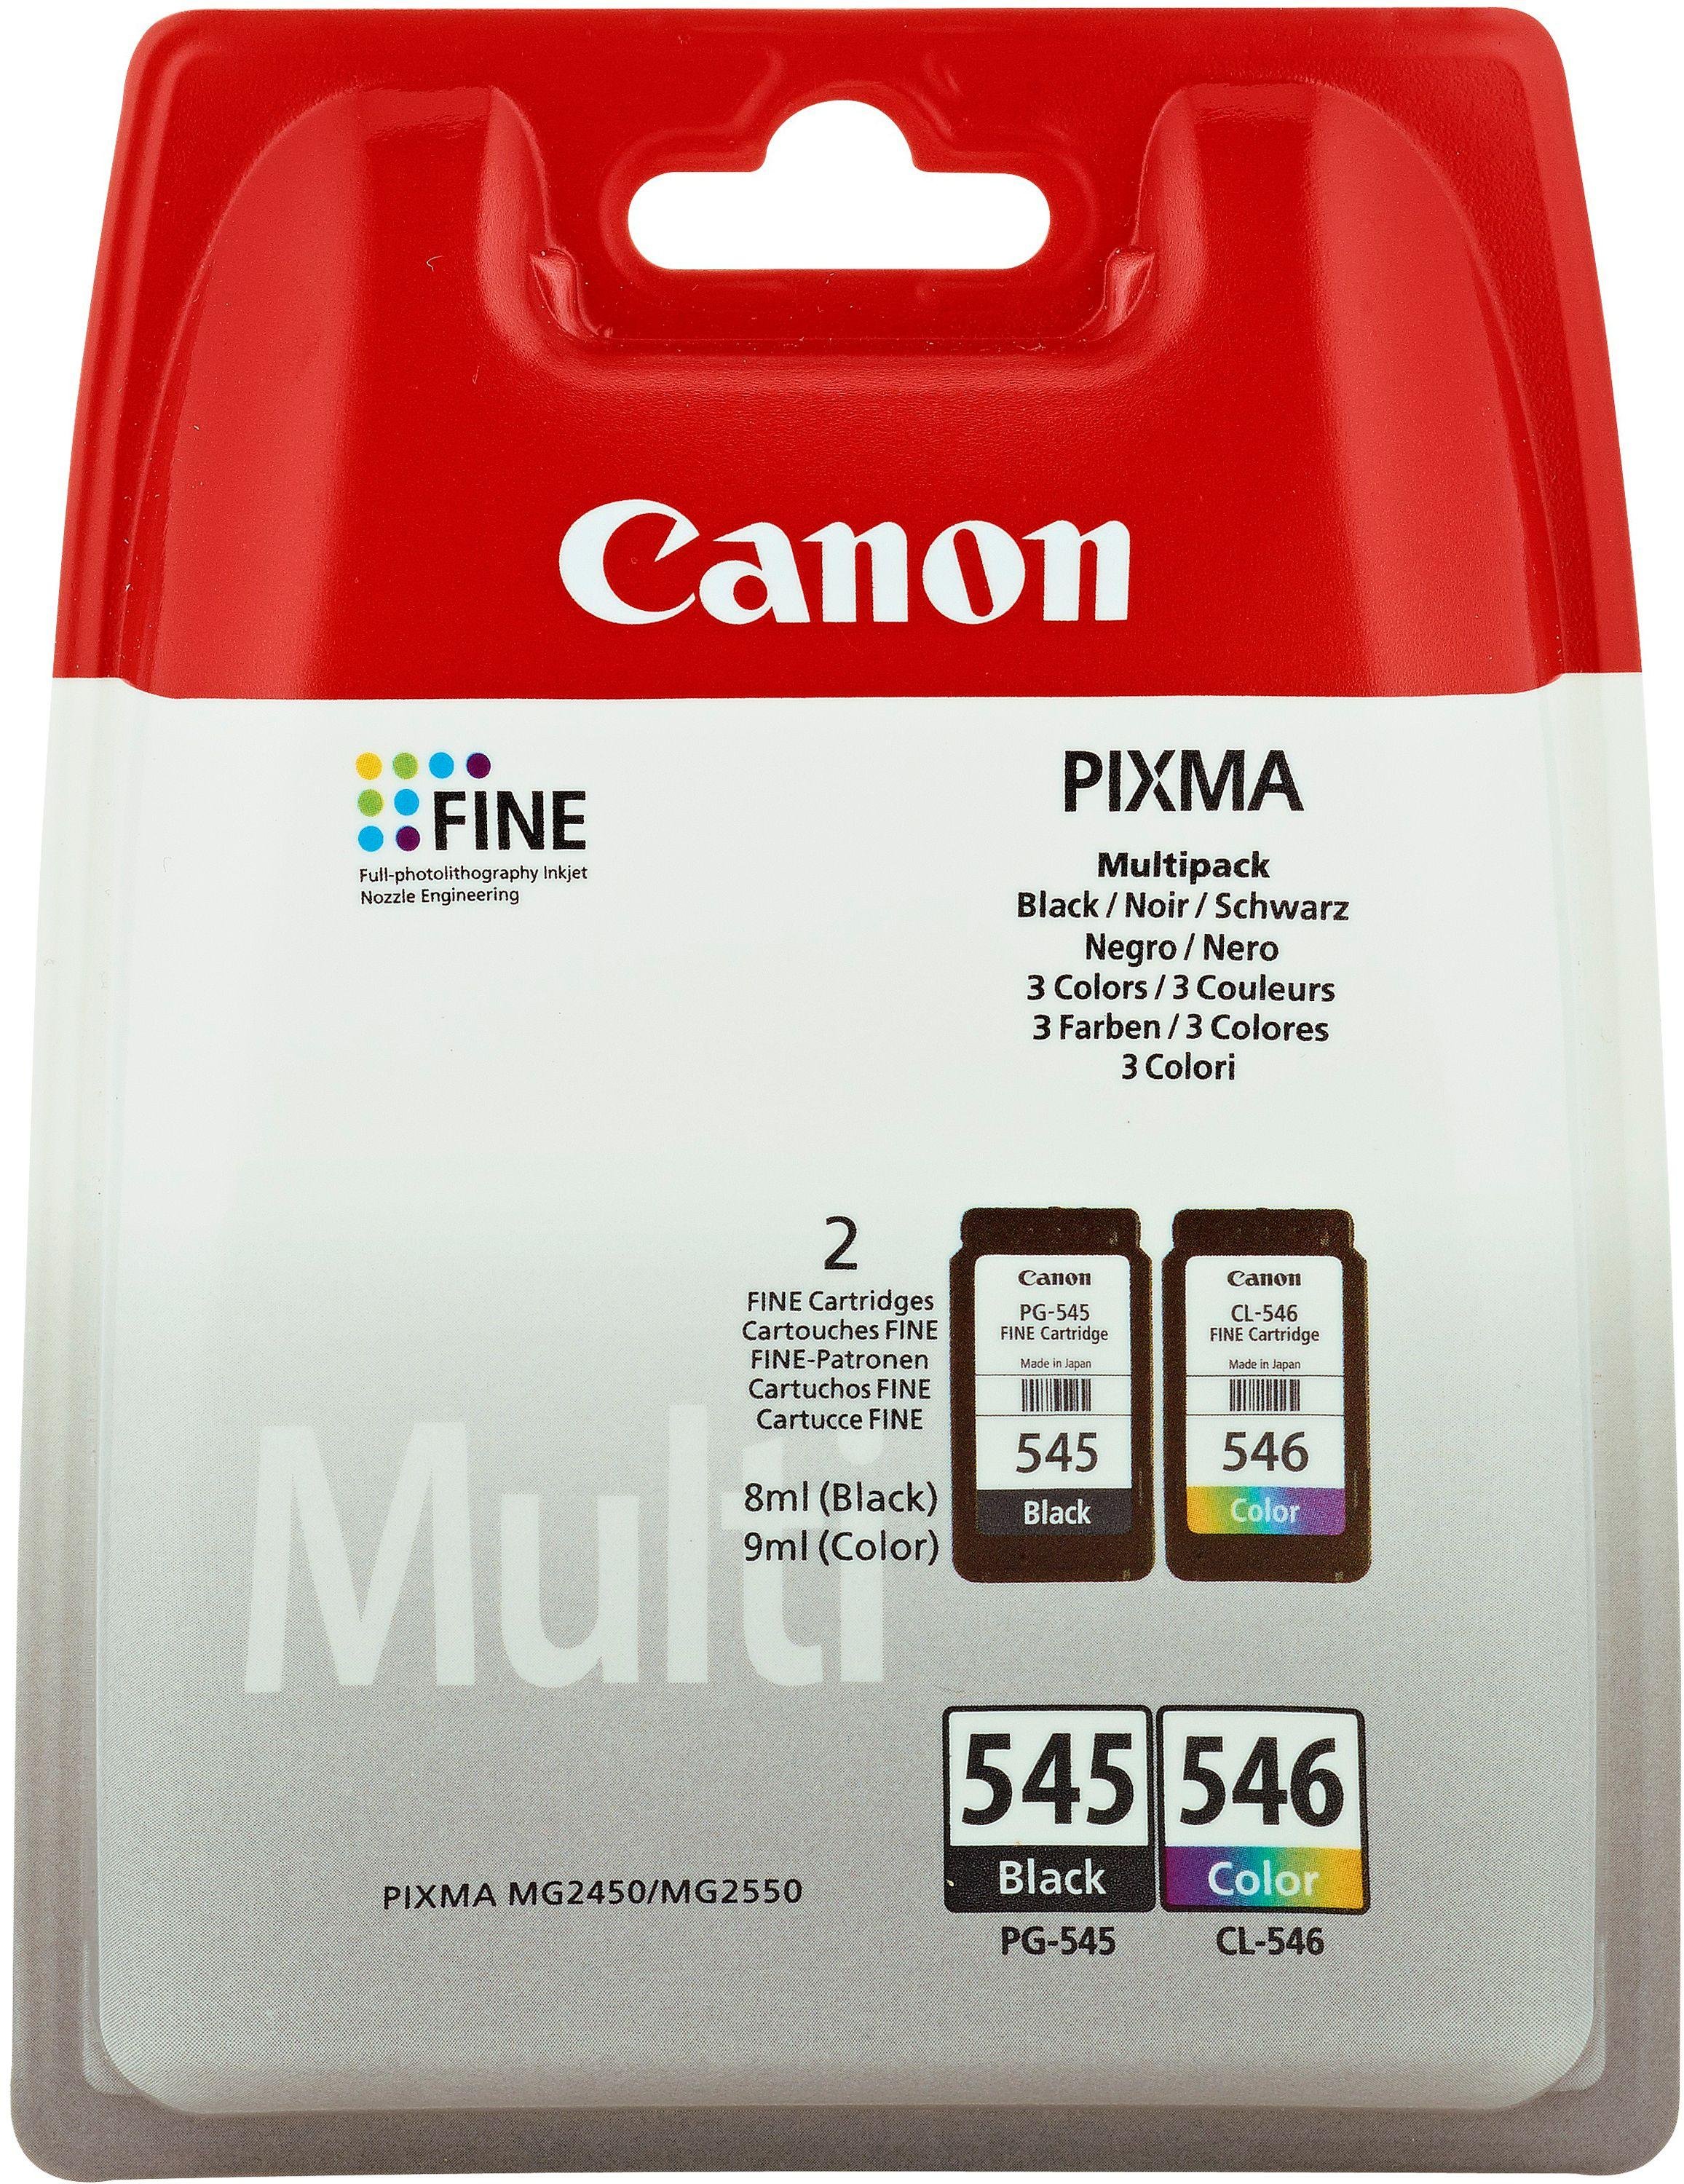 Canon PG-545 & CL-546 Ink Cartridges Black & Colour Review